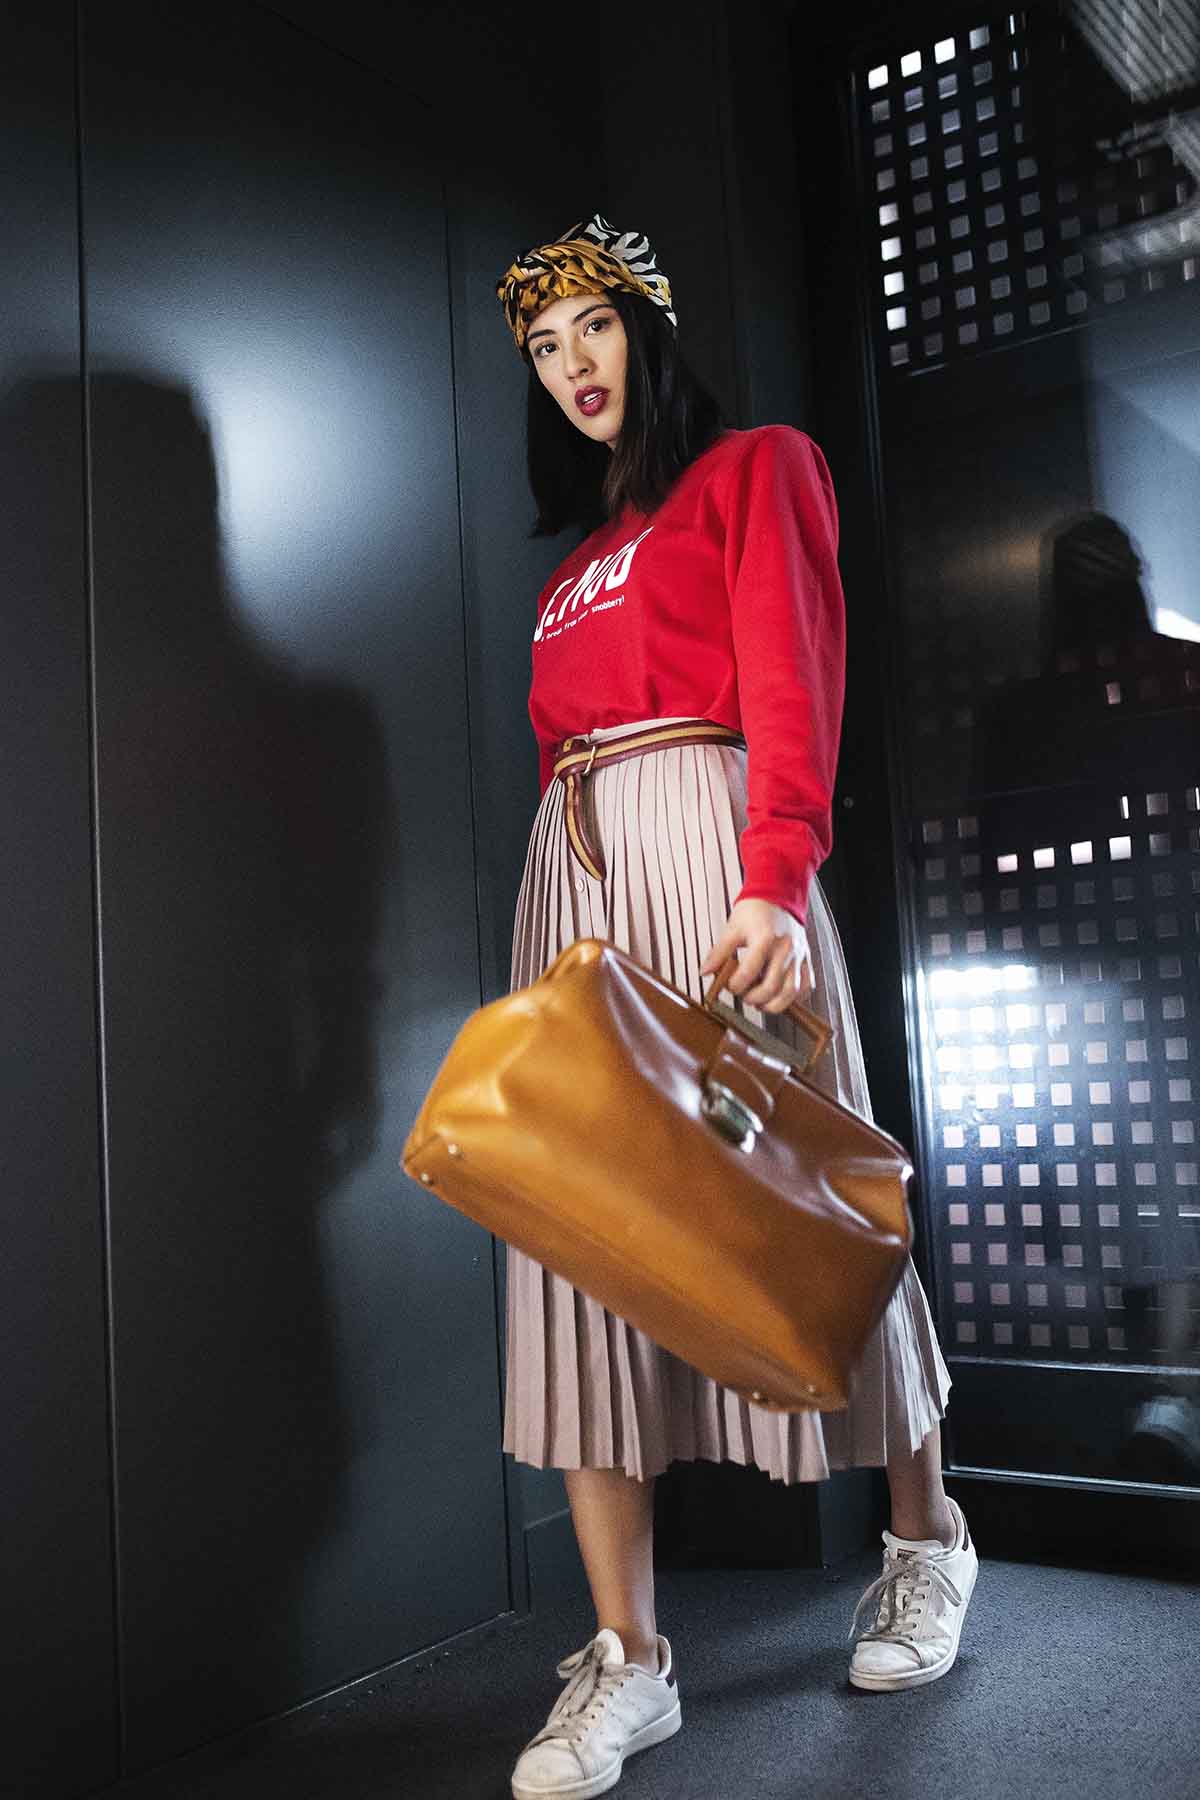 Photo d'une mannequin portant un sweat rouge imprimé SNOB